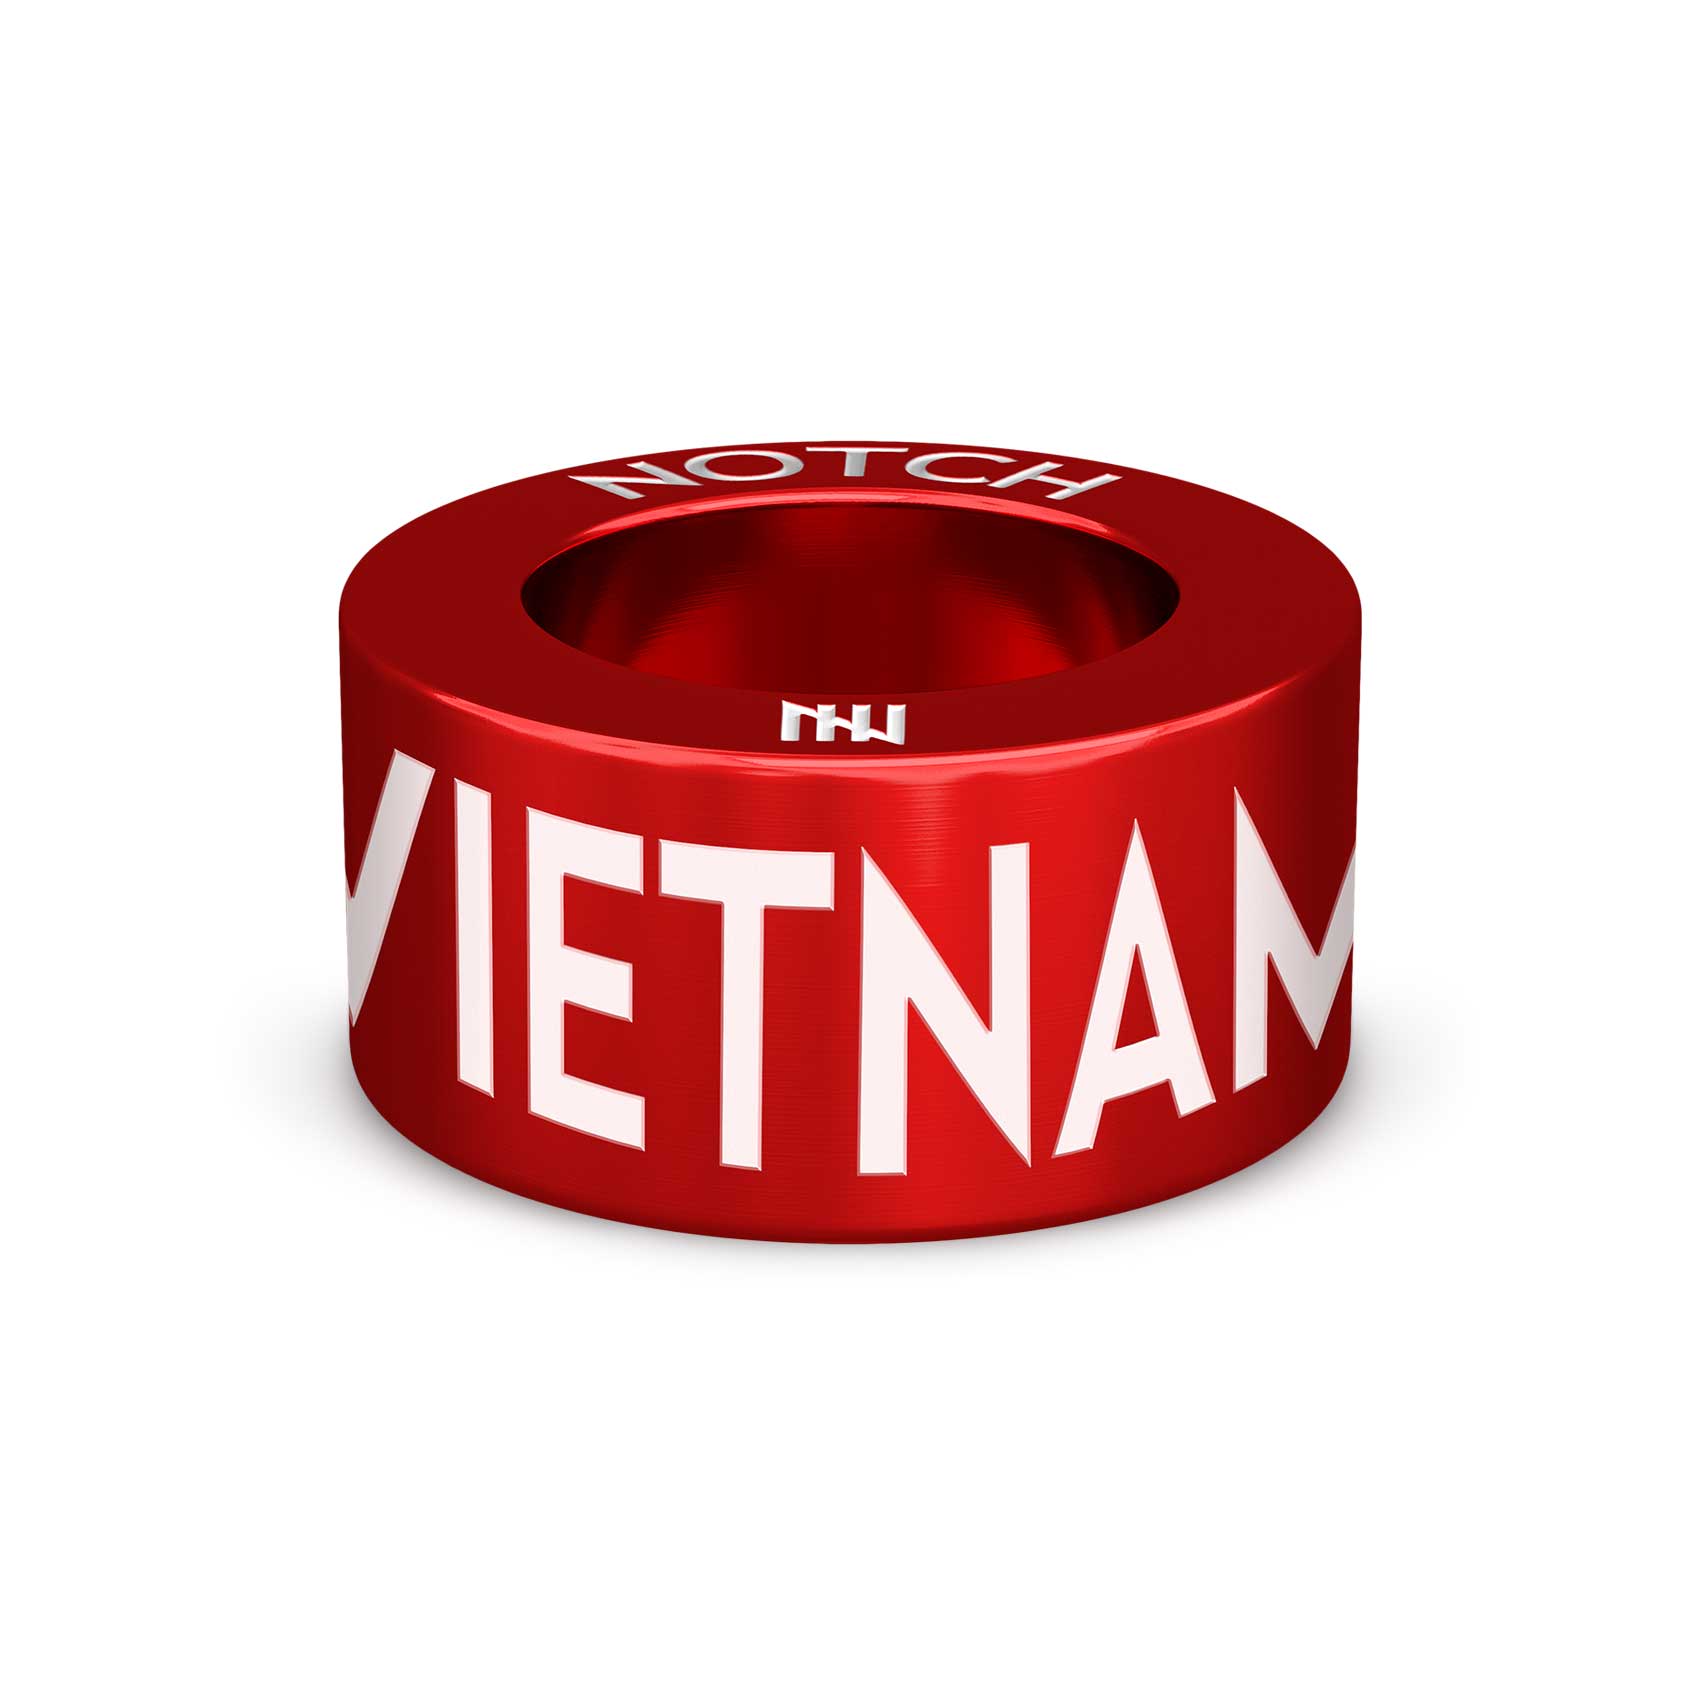 Vietnam Trek NOTCH Charm